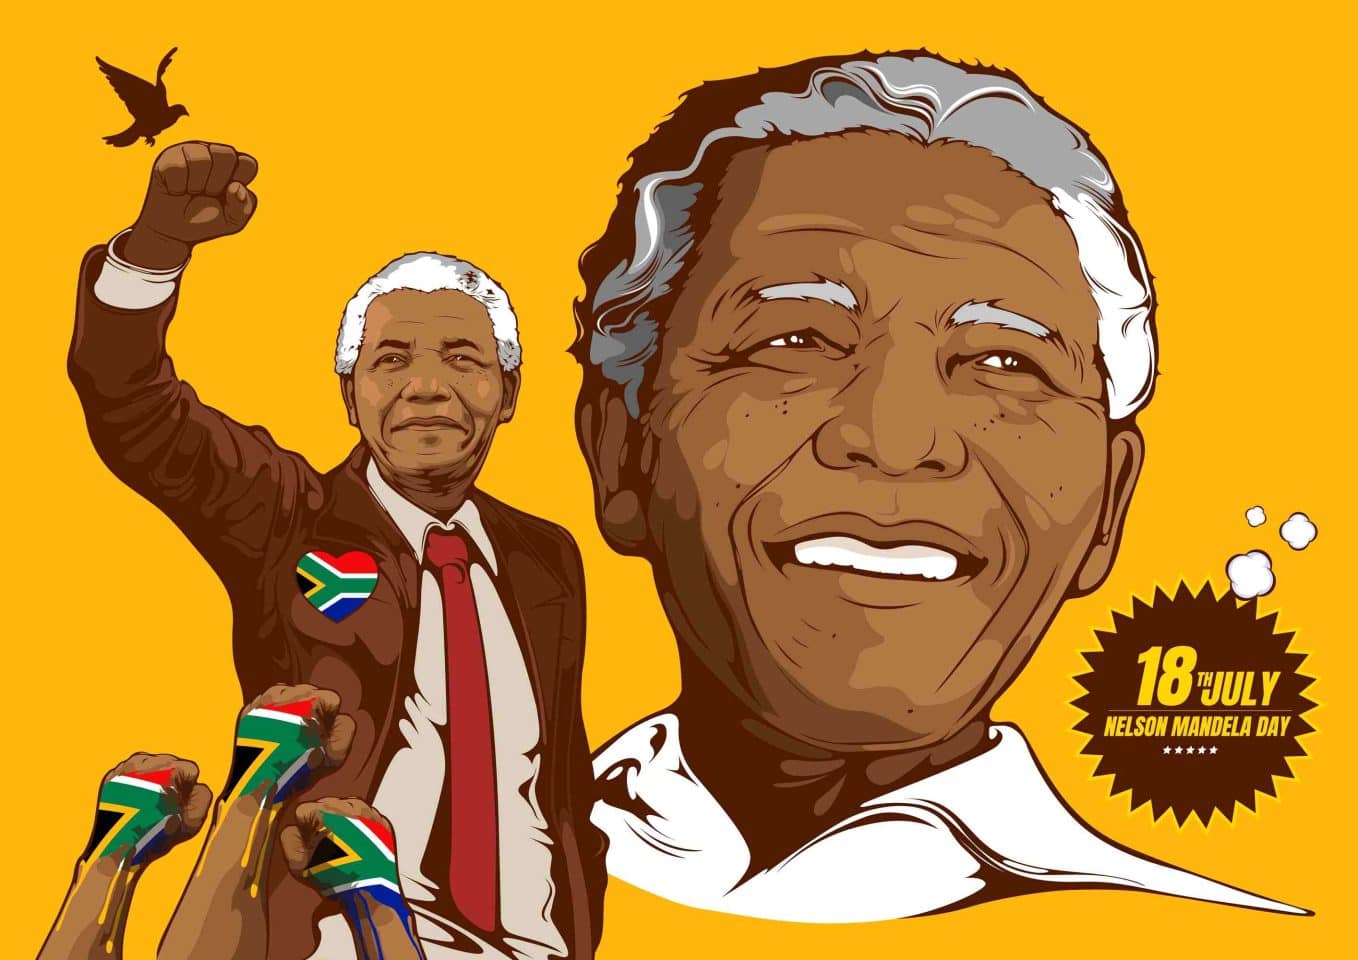 Nelson Mandela, citations, inspirantes, Afrique du Sud, liberté, justice, égalité, paix, apartheid, lutte, prison, pardon, leadership, courage, persévérance, démocratie, humanité, réconciliation, unité, espoir, dignité, engagement, héritage, inspiration, Mandela Day